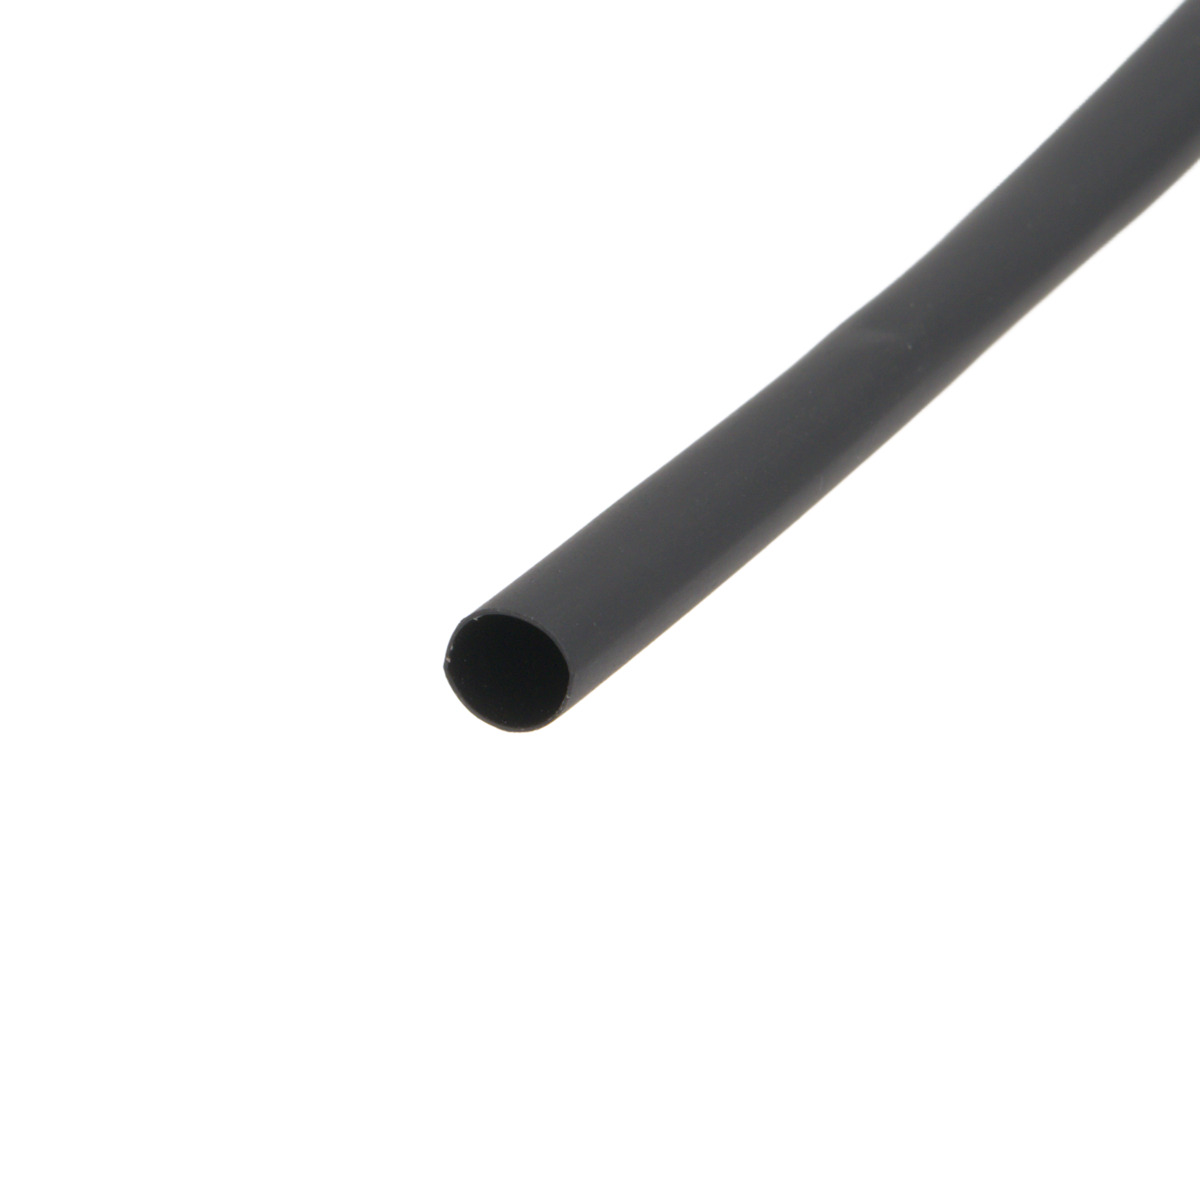 Pack de corte [1.2m] de tubo termorretráctil 2:1 Ø19.1mm negro – Poliolefina libre de halógeno e ignífugo [x10]